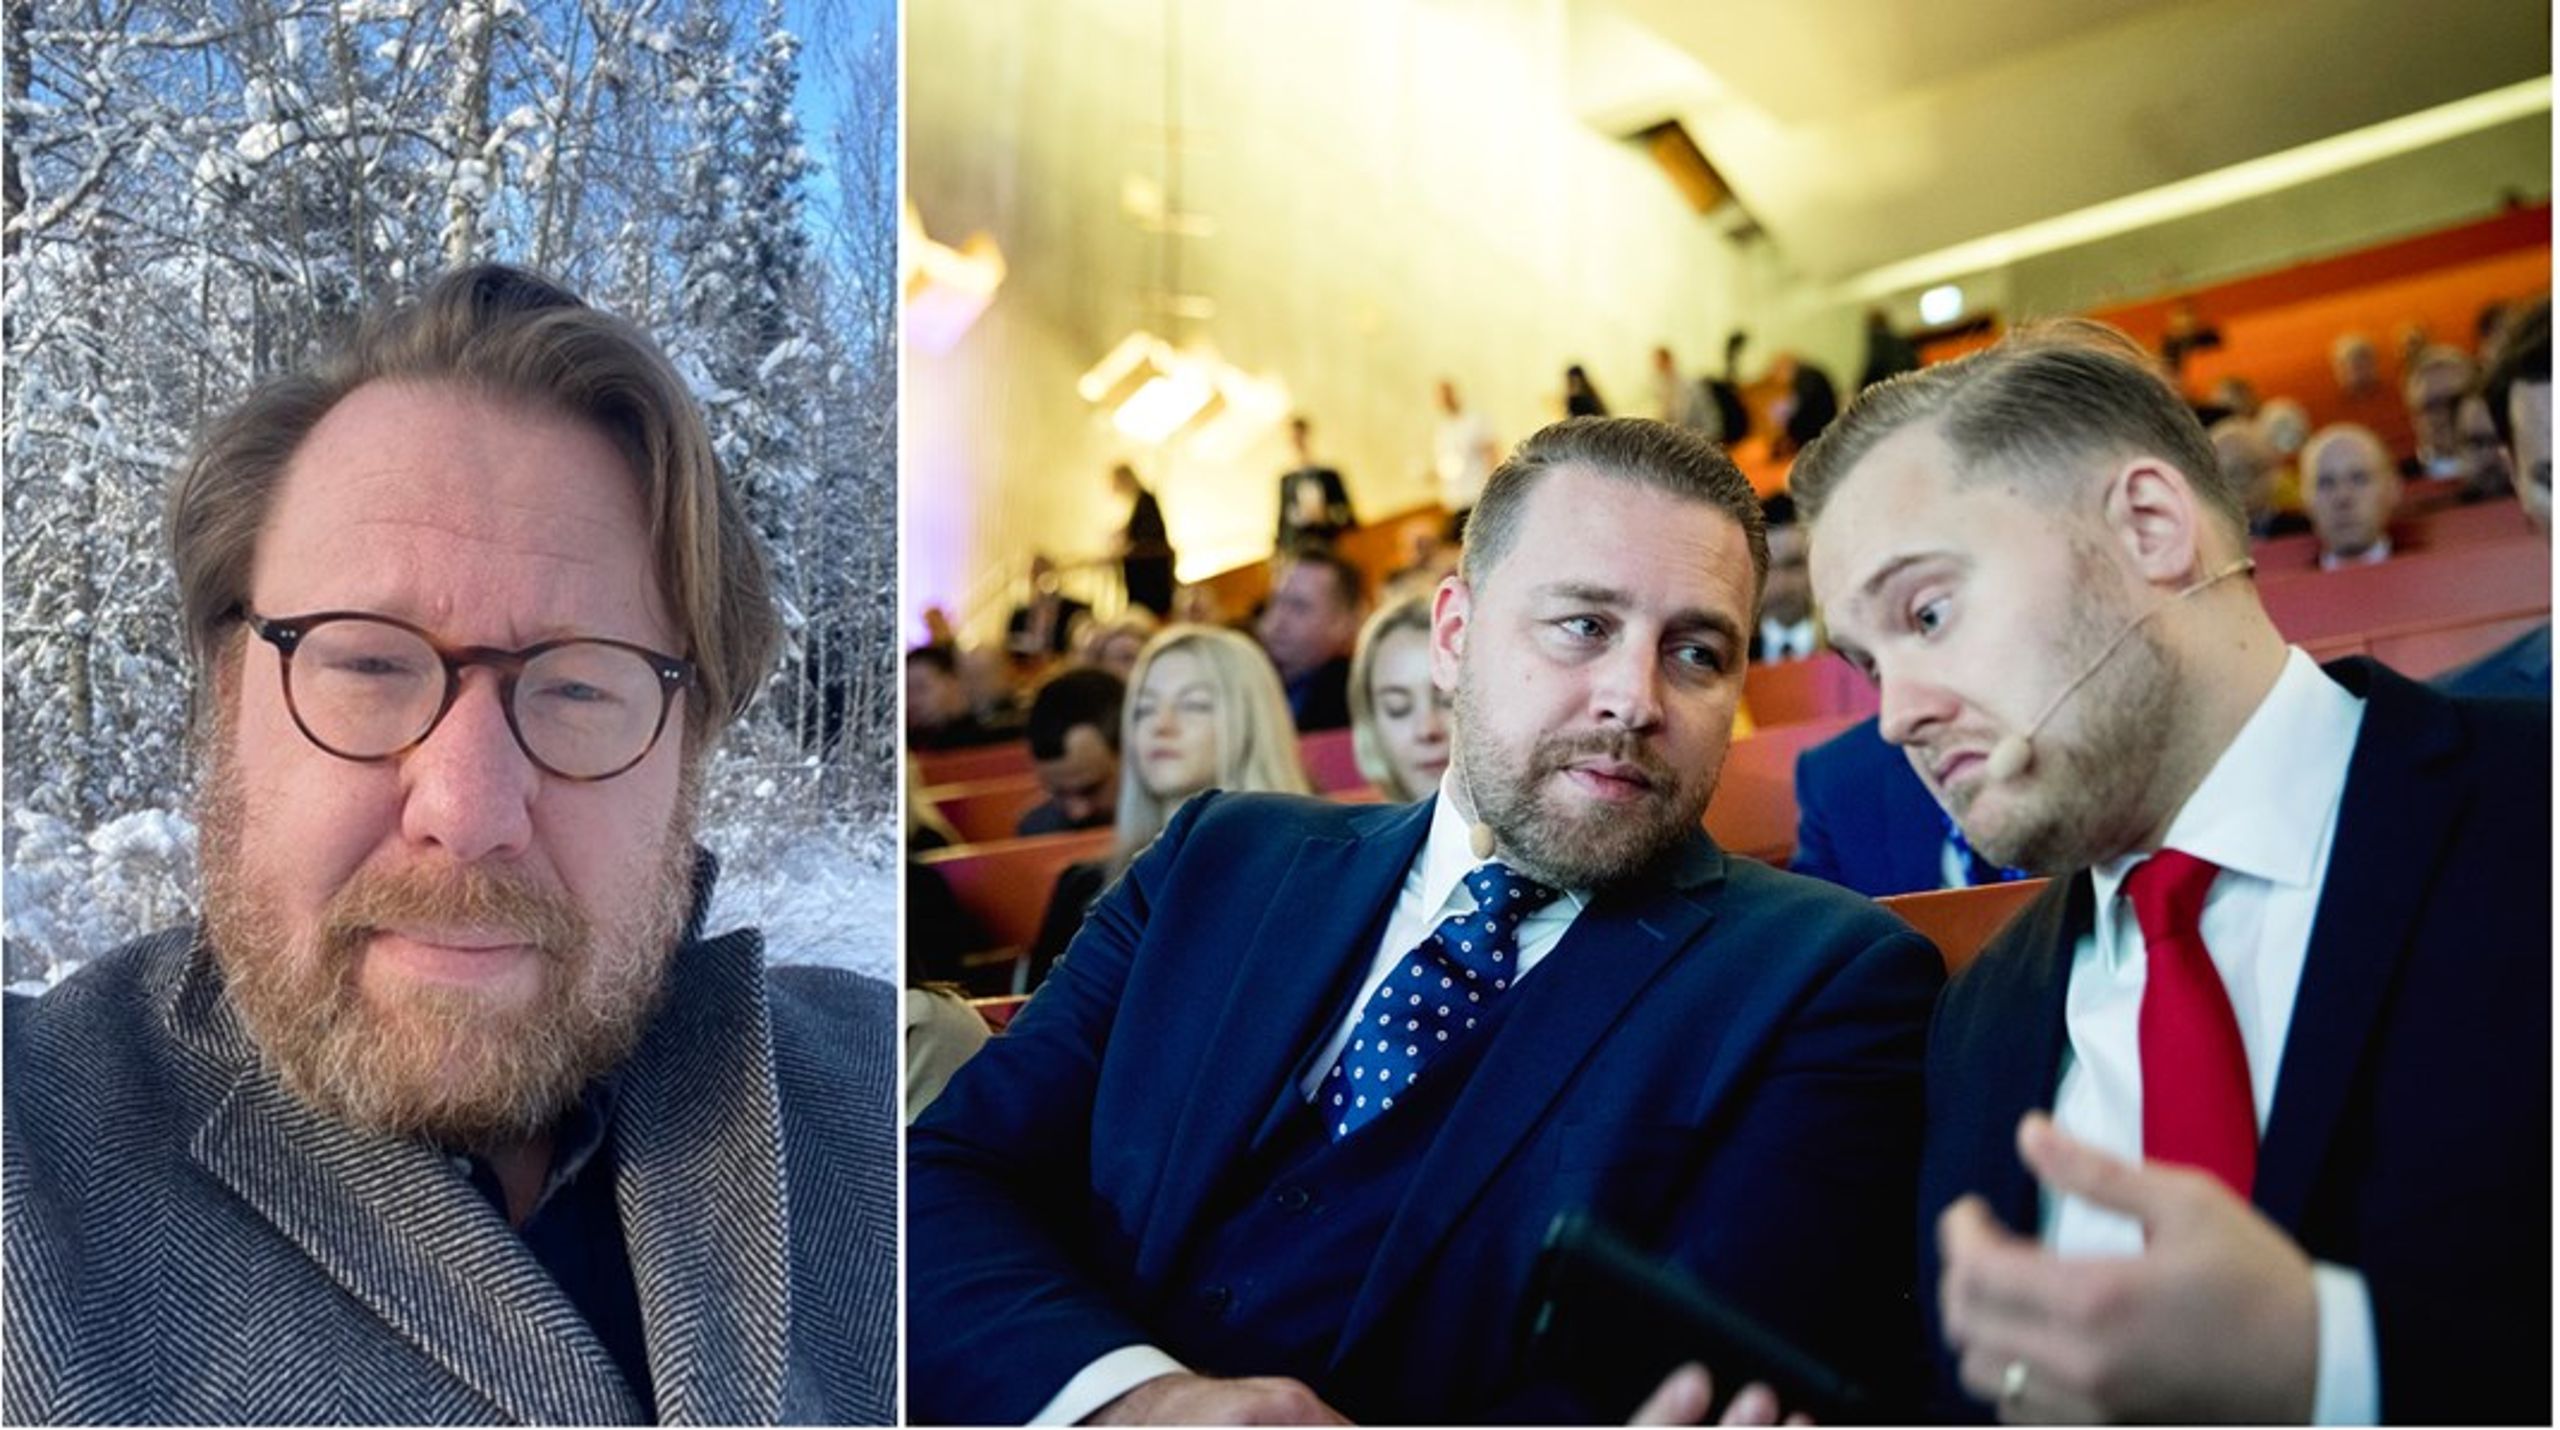 ”Det är ett väl genomtänkt drag sett ur SD:s perspektiv”&nbsp;Skriver krönikören om att Mattias Karlsson blir partiets nya landsbygdspolitiska talesperson.